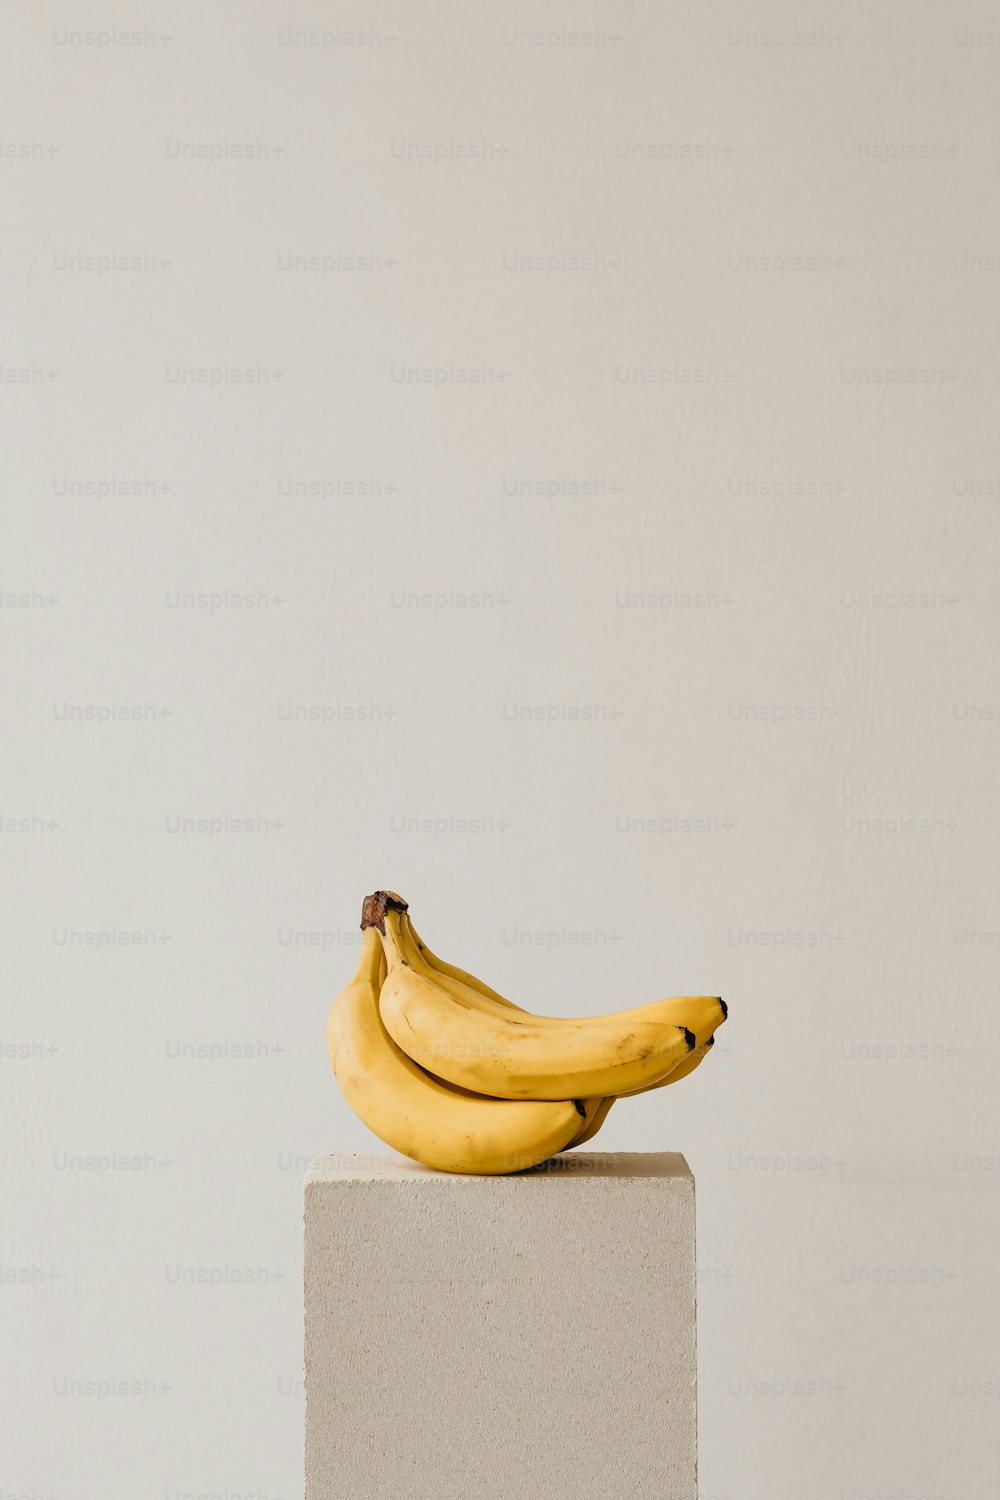 un bouquet de bananes assis sur un bloc blanc